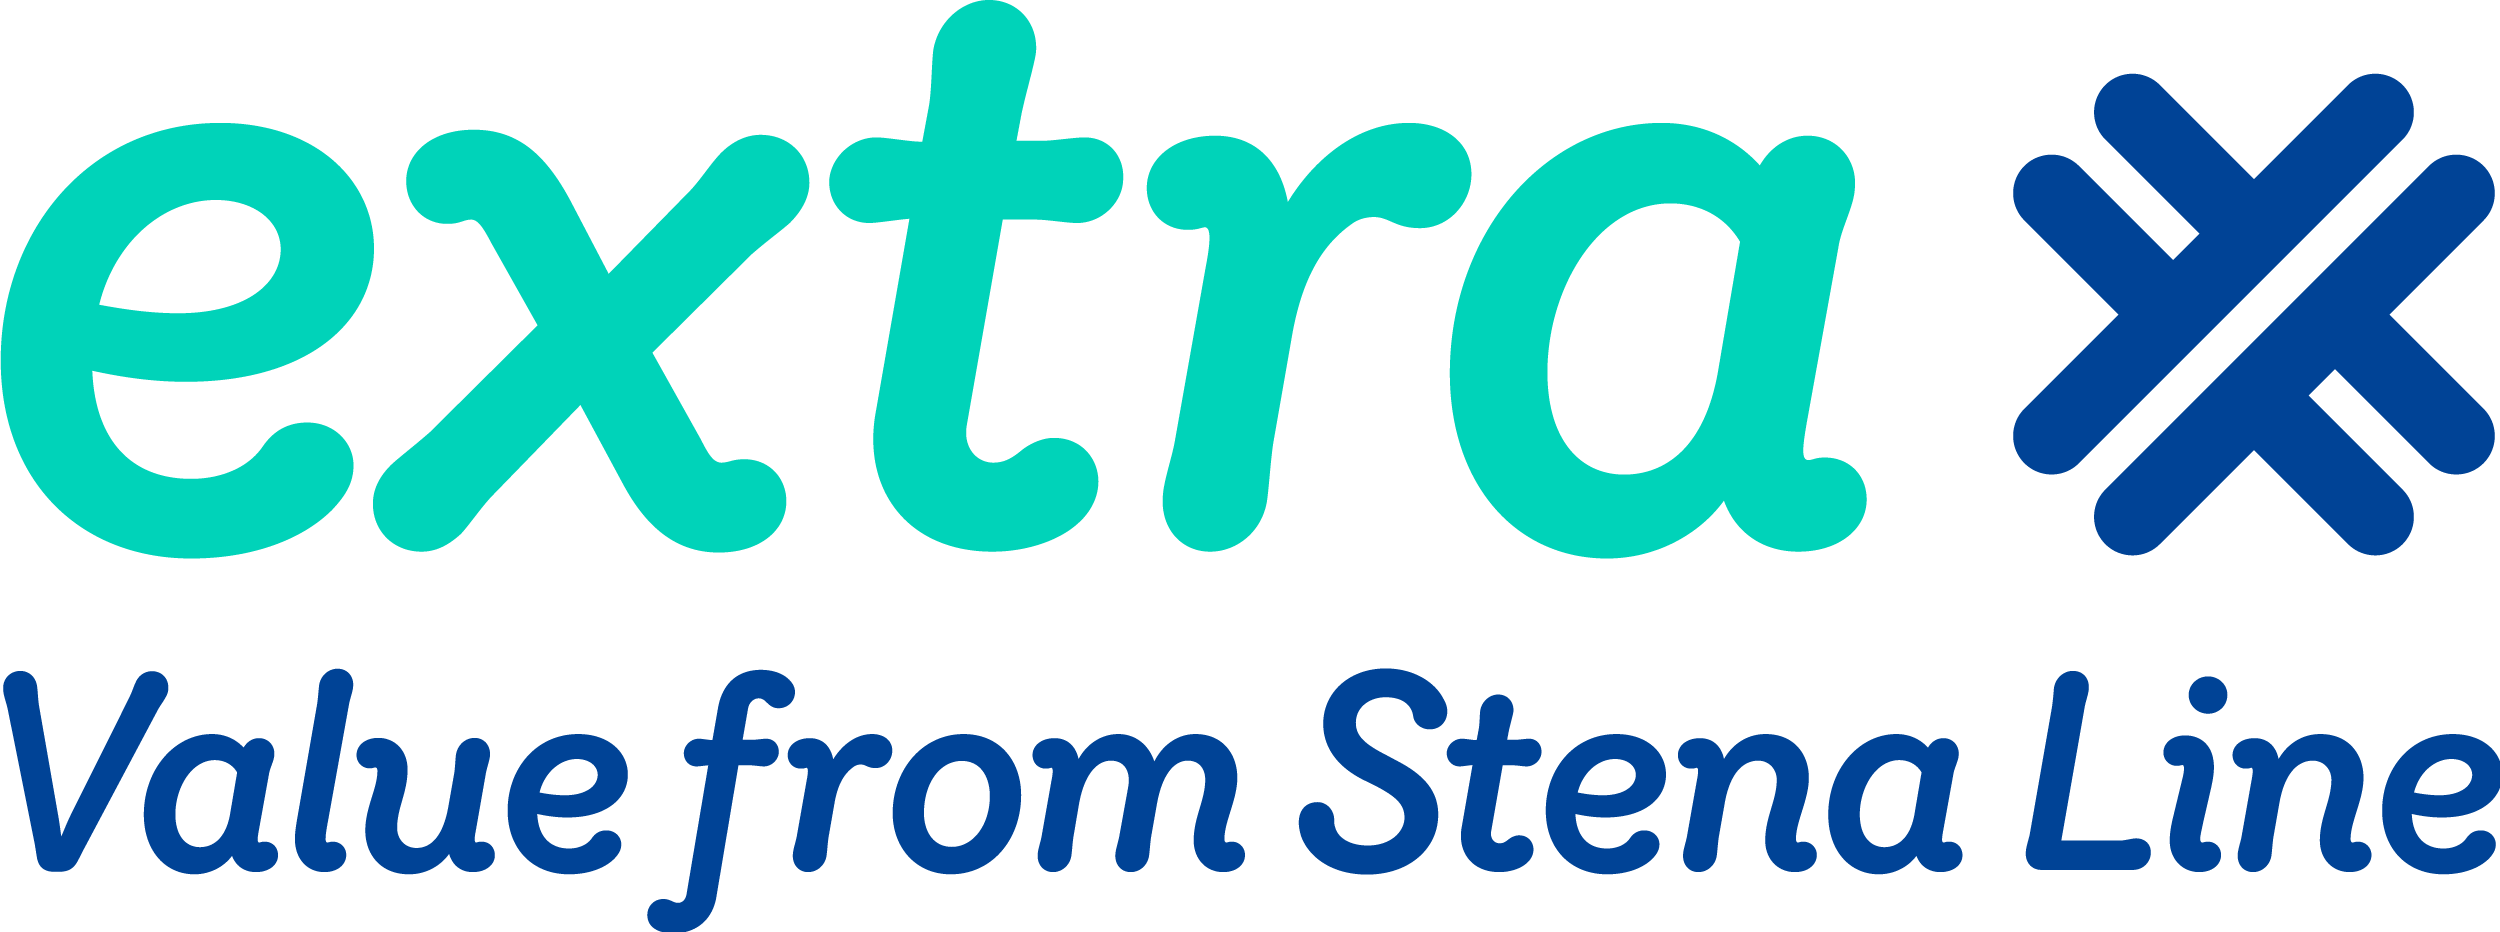 Stena Linesi liikmeklubi „Extra“ logo.